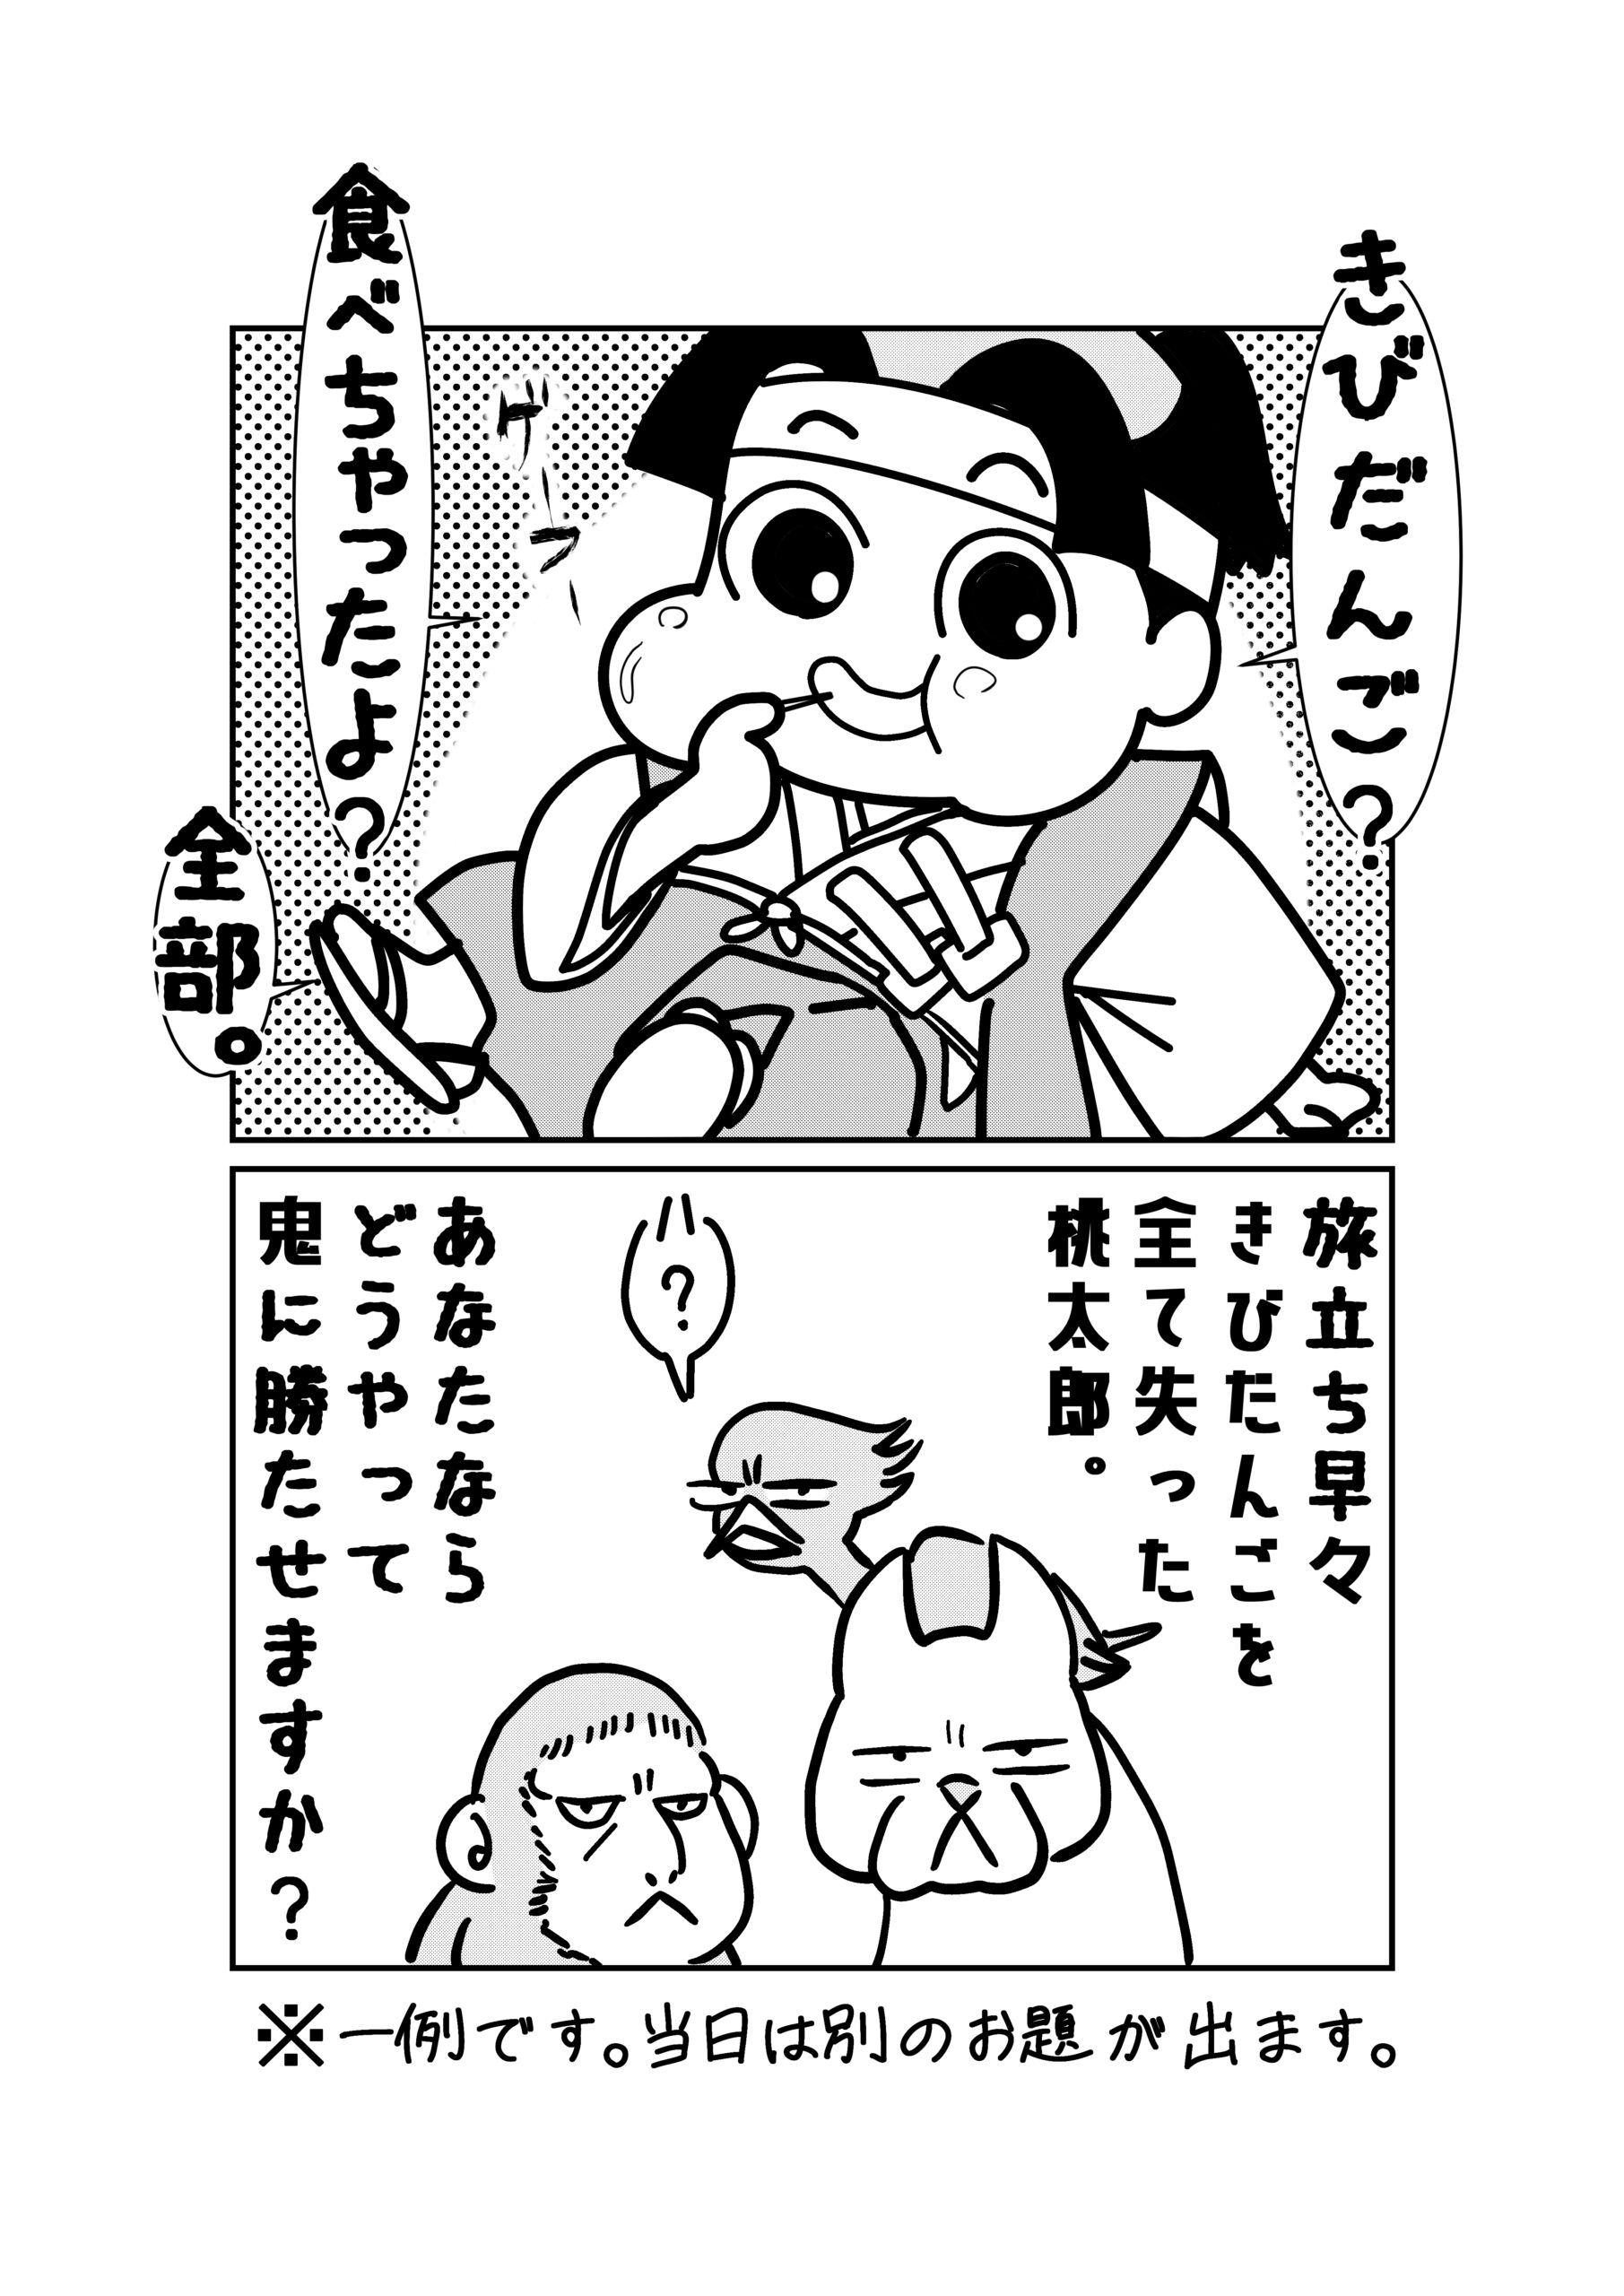 松岡漫画イラスト